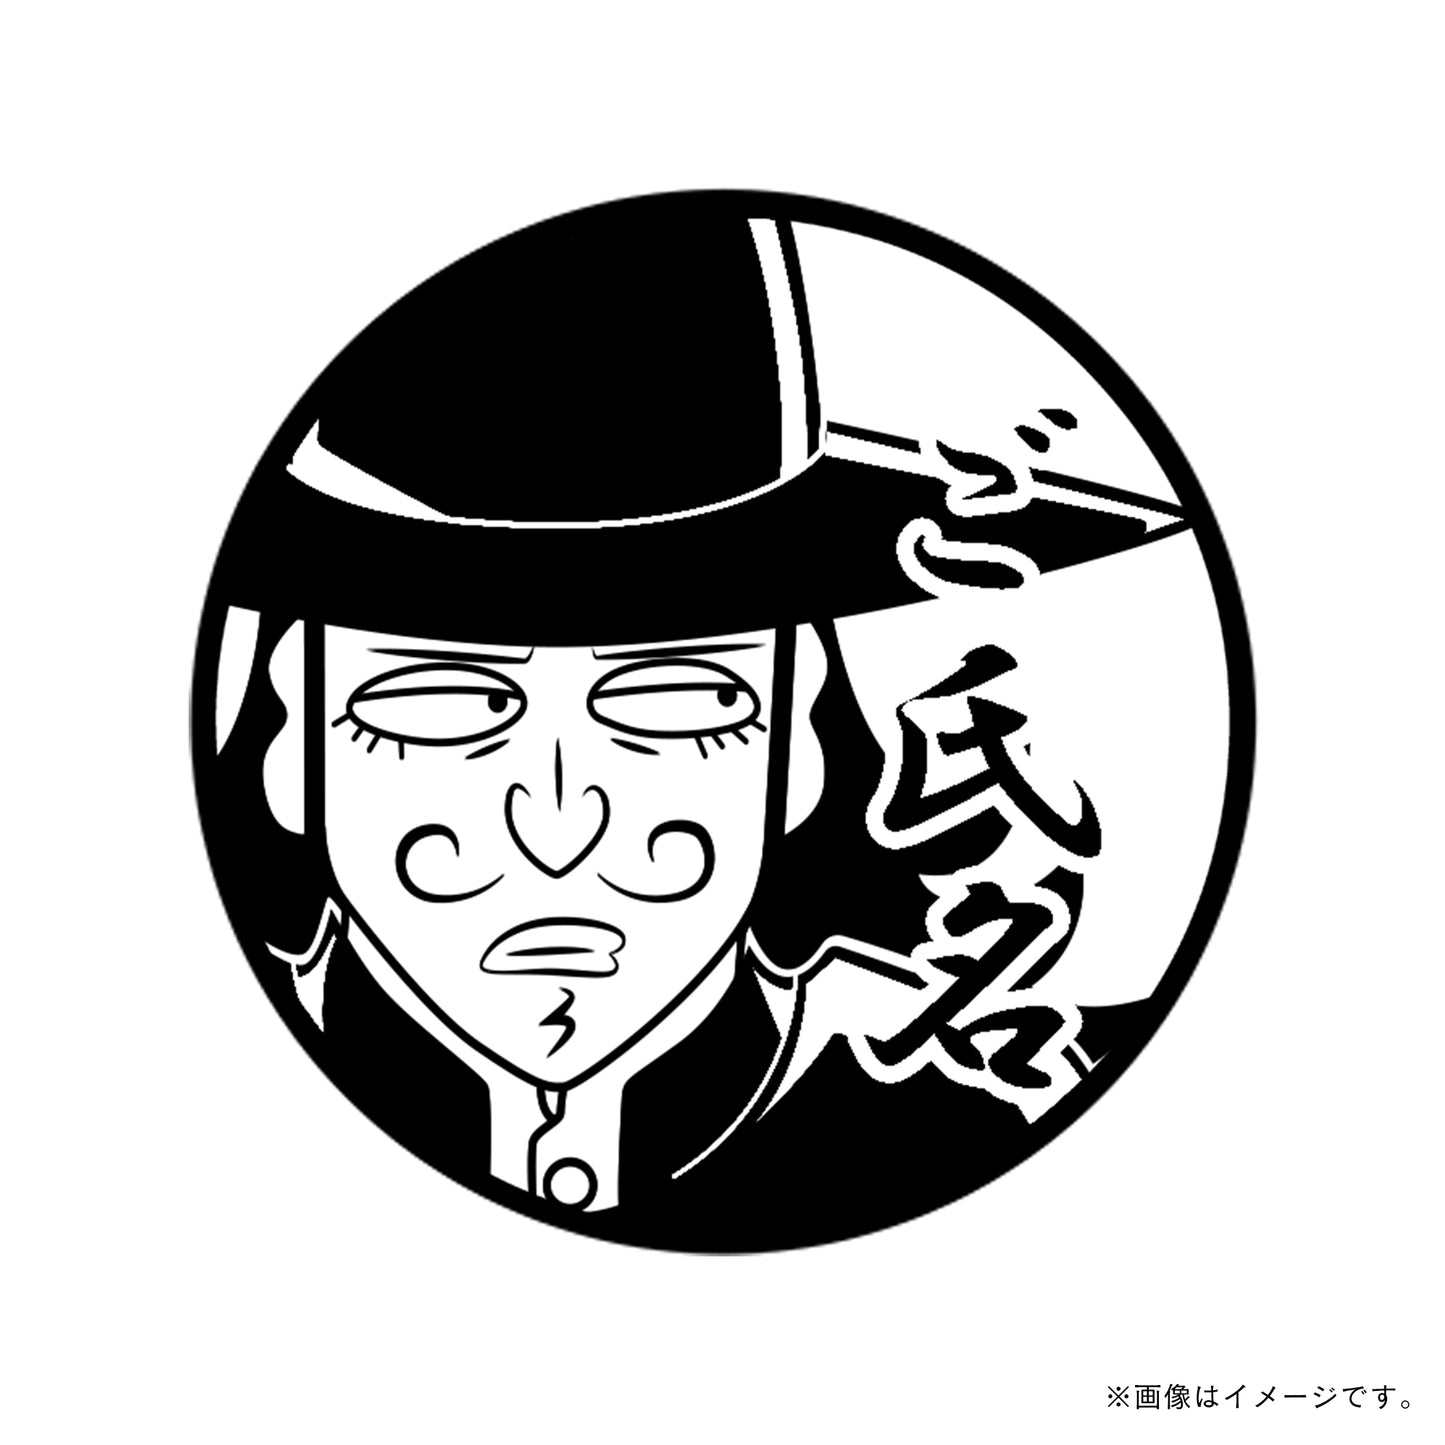 【忍たま乱太郎】タソガレドキ城・黄昏甚兵衛・丸印18mm